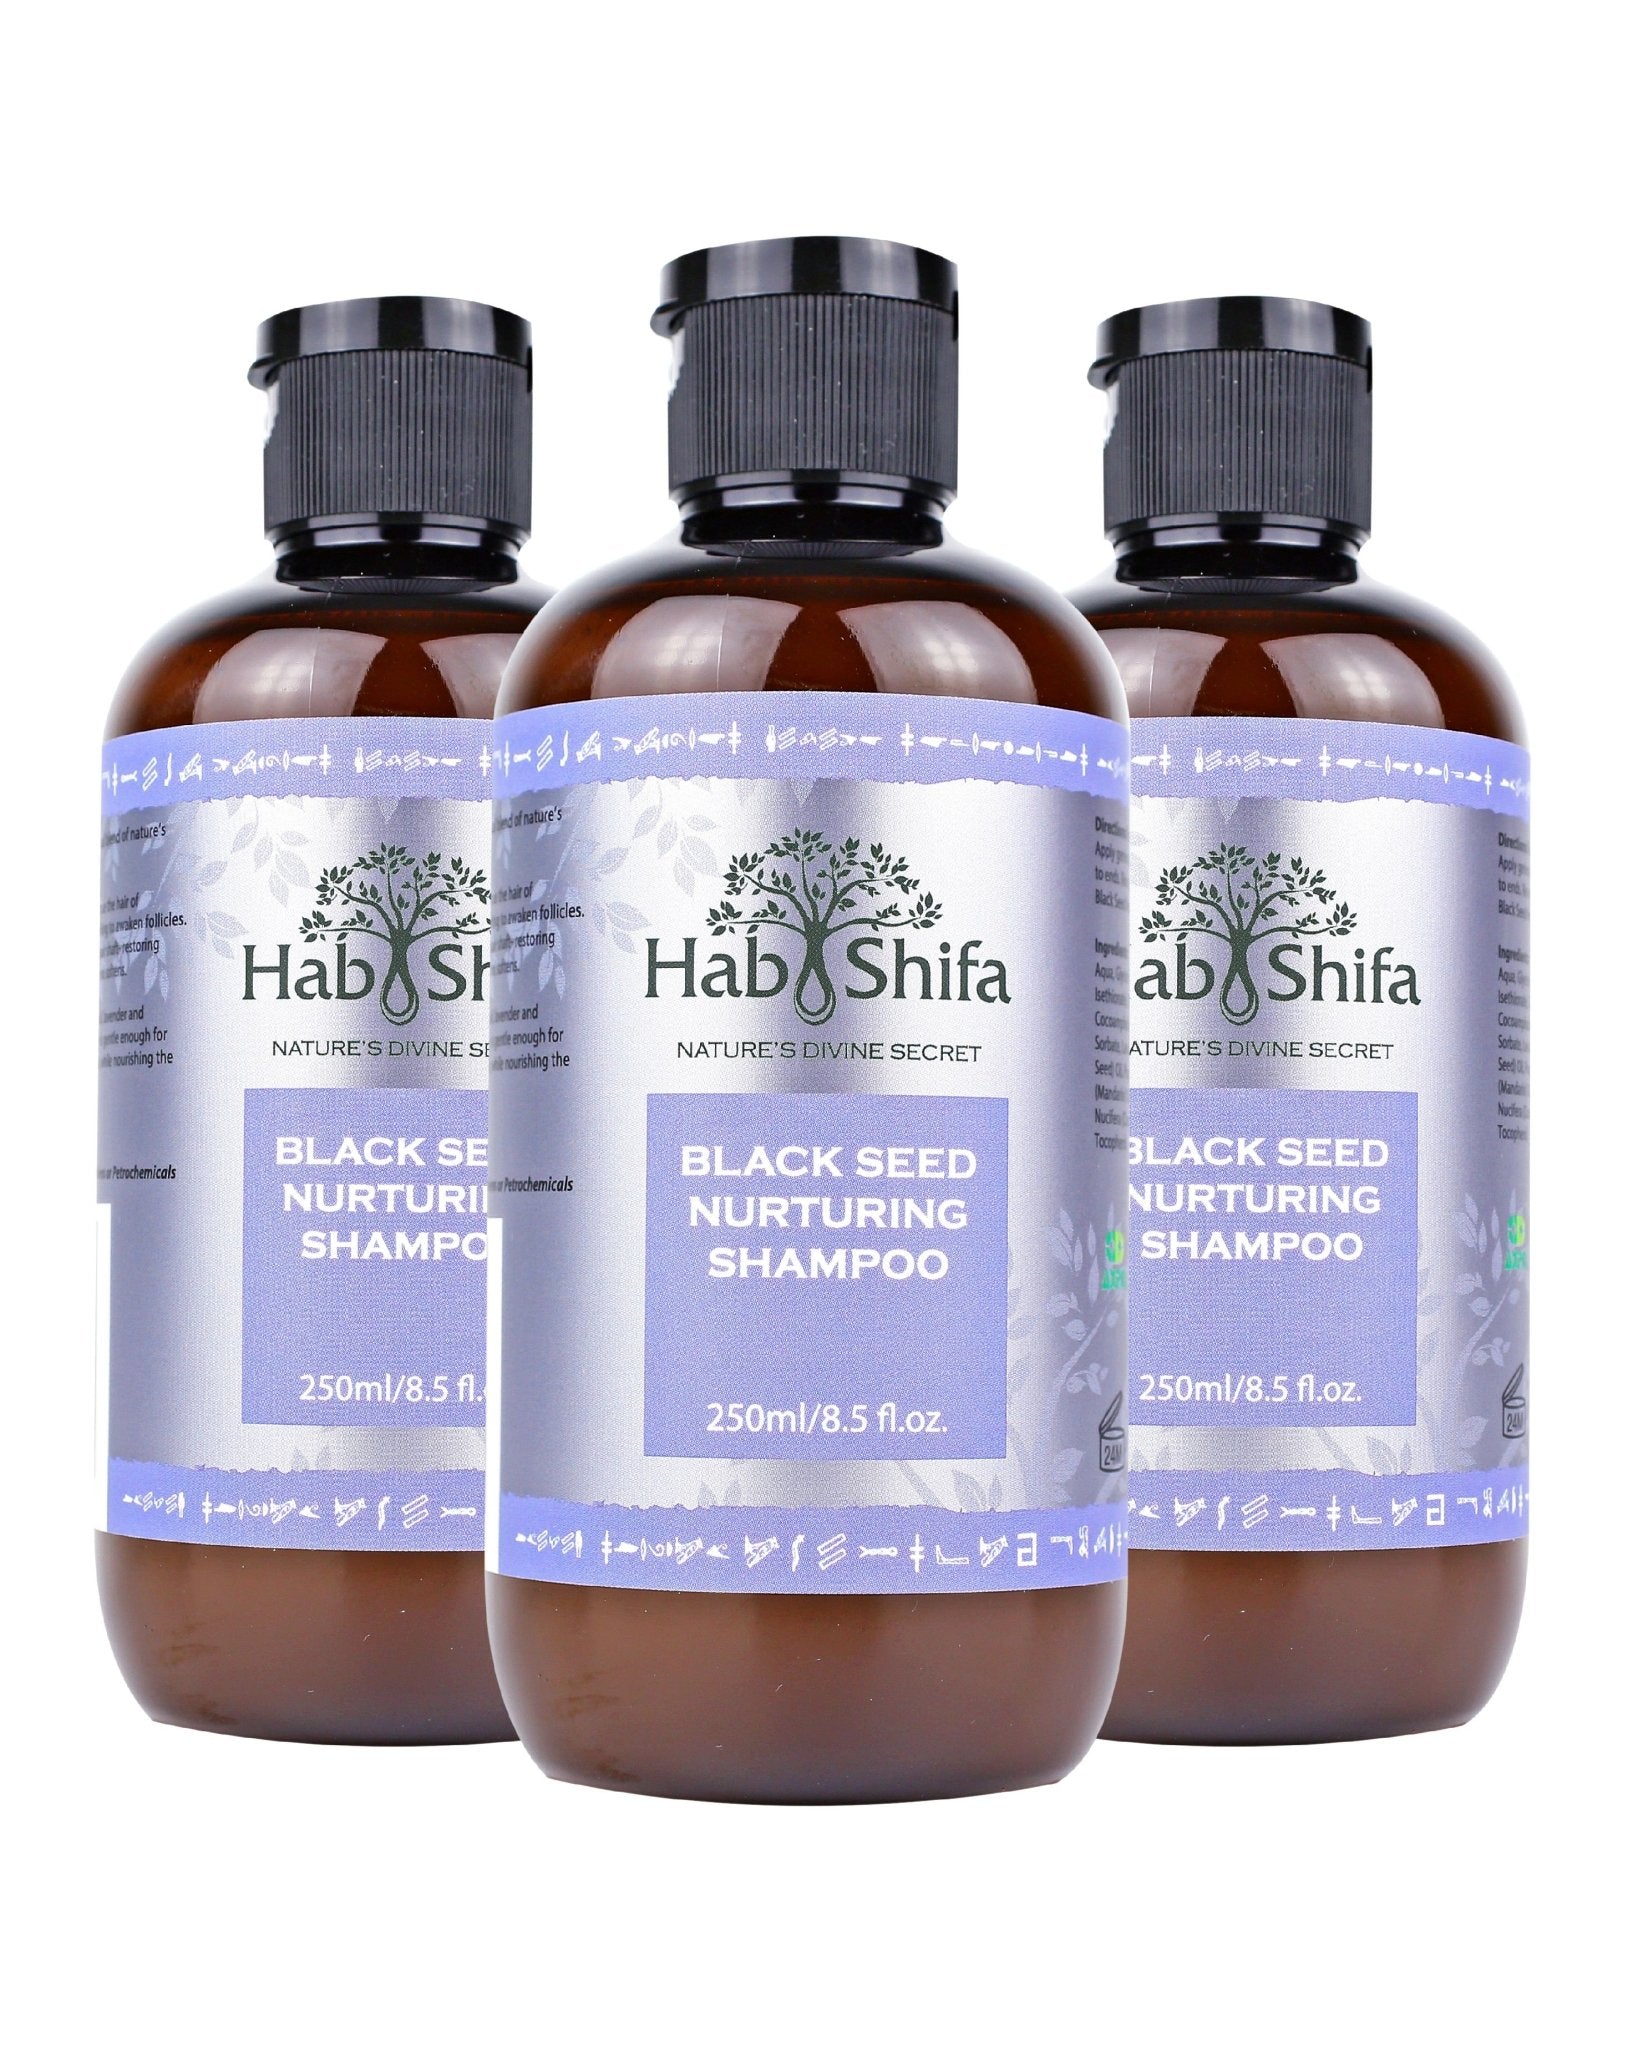 Black Seed Nurturing Shampoo - Hab Shifa